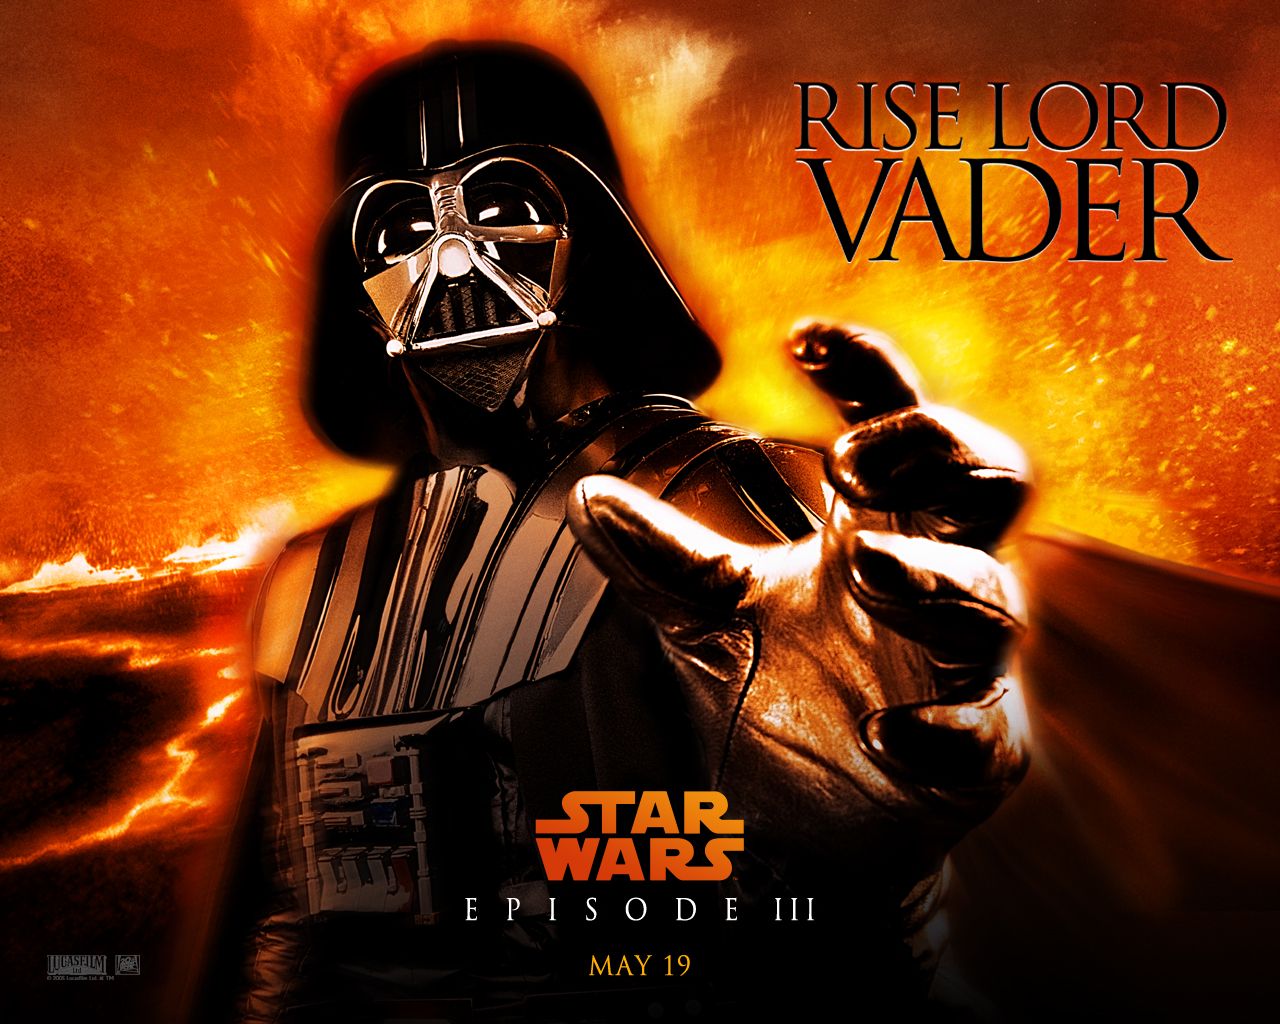 Hayden Christensen - Hayden Christensen in Star Wars Episode III